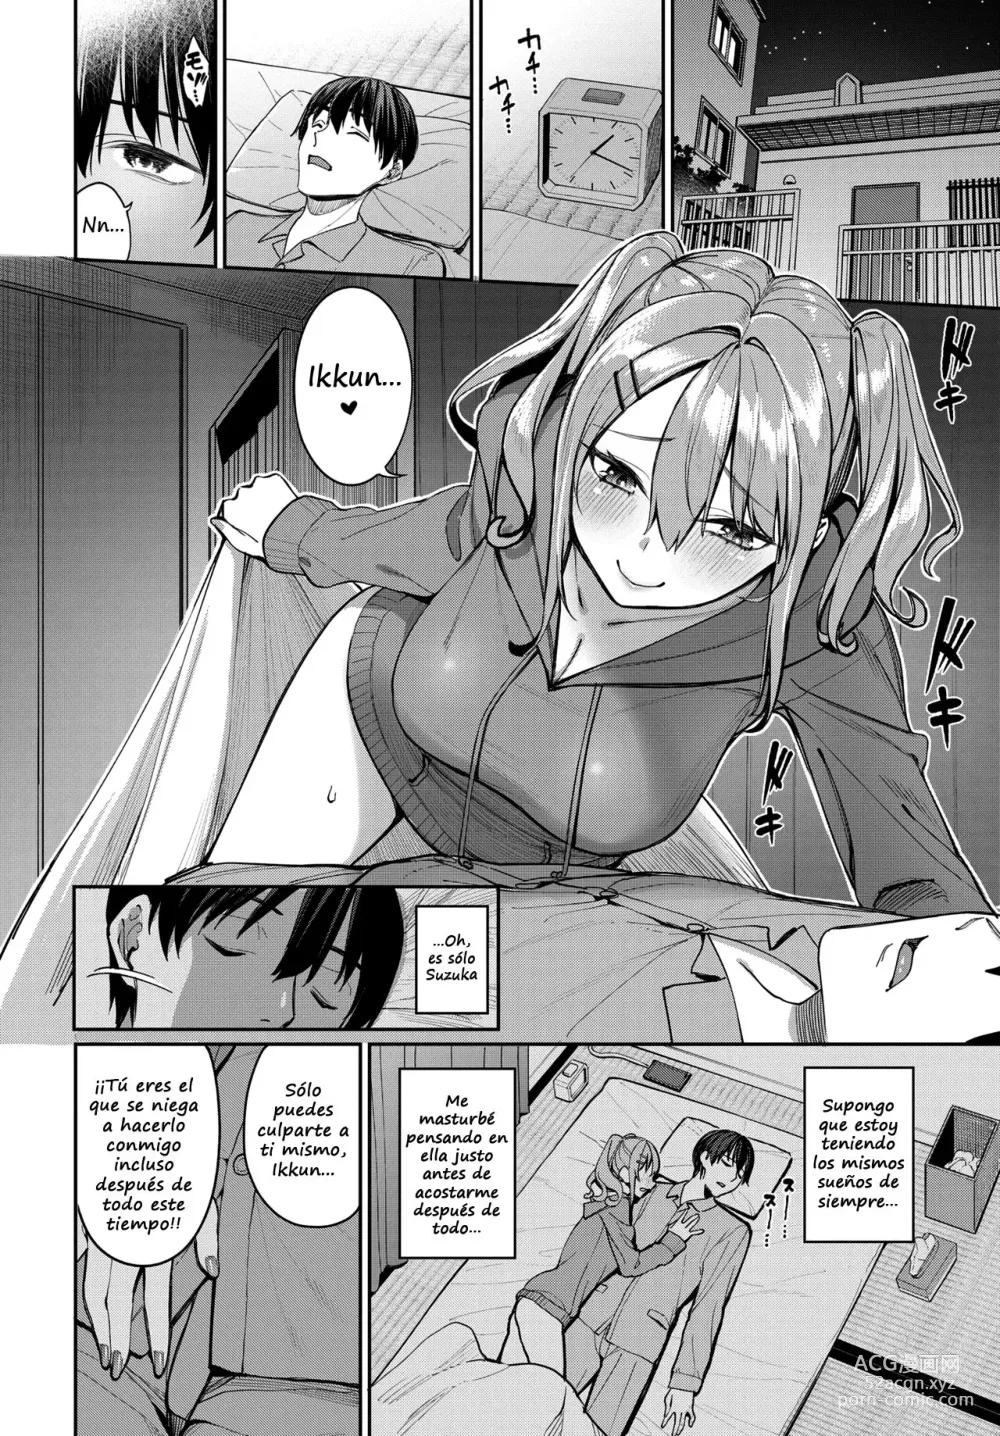 Page 4 of manga Moral Crisis!